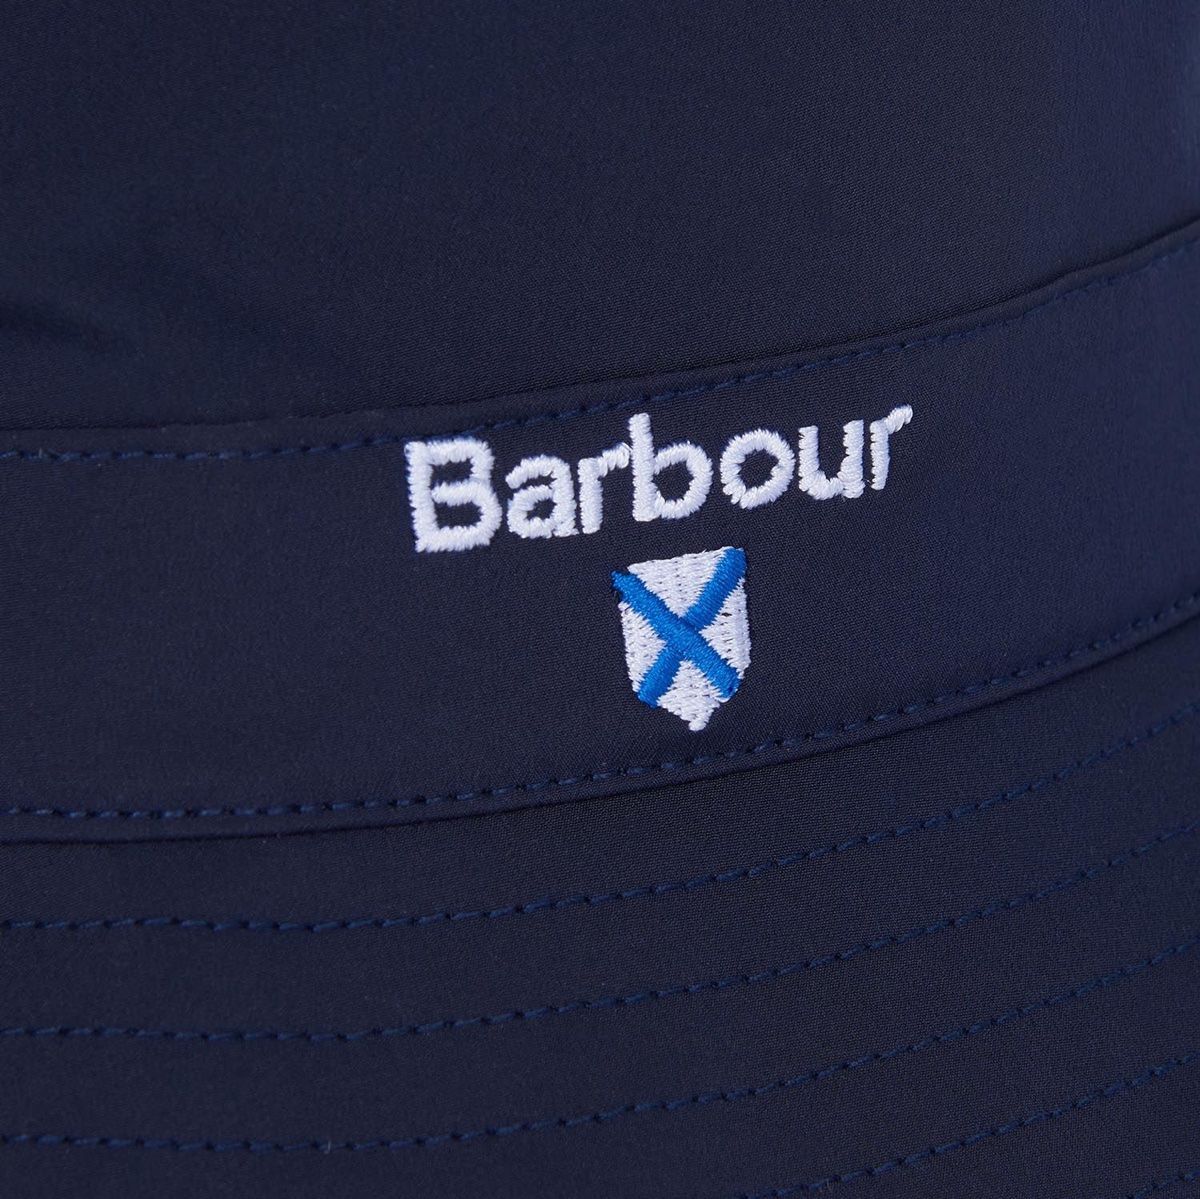 Barbour Crest Waterproof Packaway Sports Hat | Navy